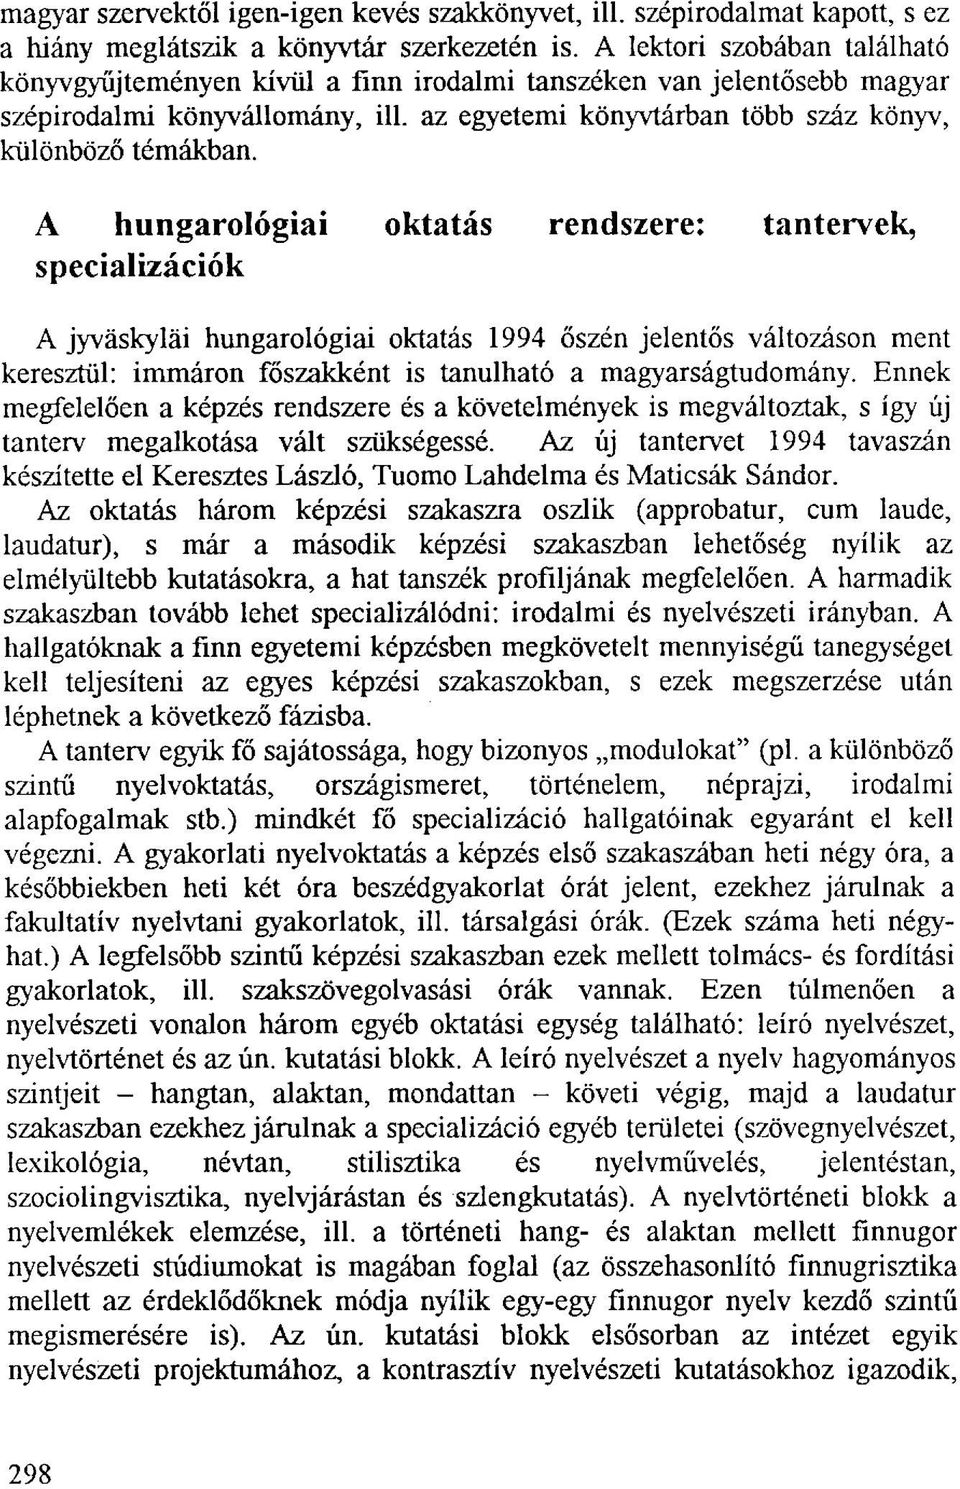 A hungarológiai oktatás rendszere: tantervek, specializációk A jyväskyläi hungarológiai oktatás 1994 őszén jelentős változáson ment keresztül: immáron főszakként is tanulható a magyarságtudomány.